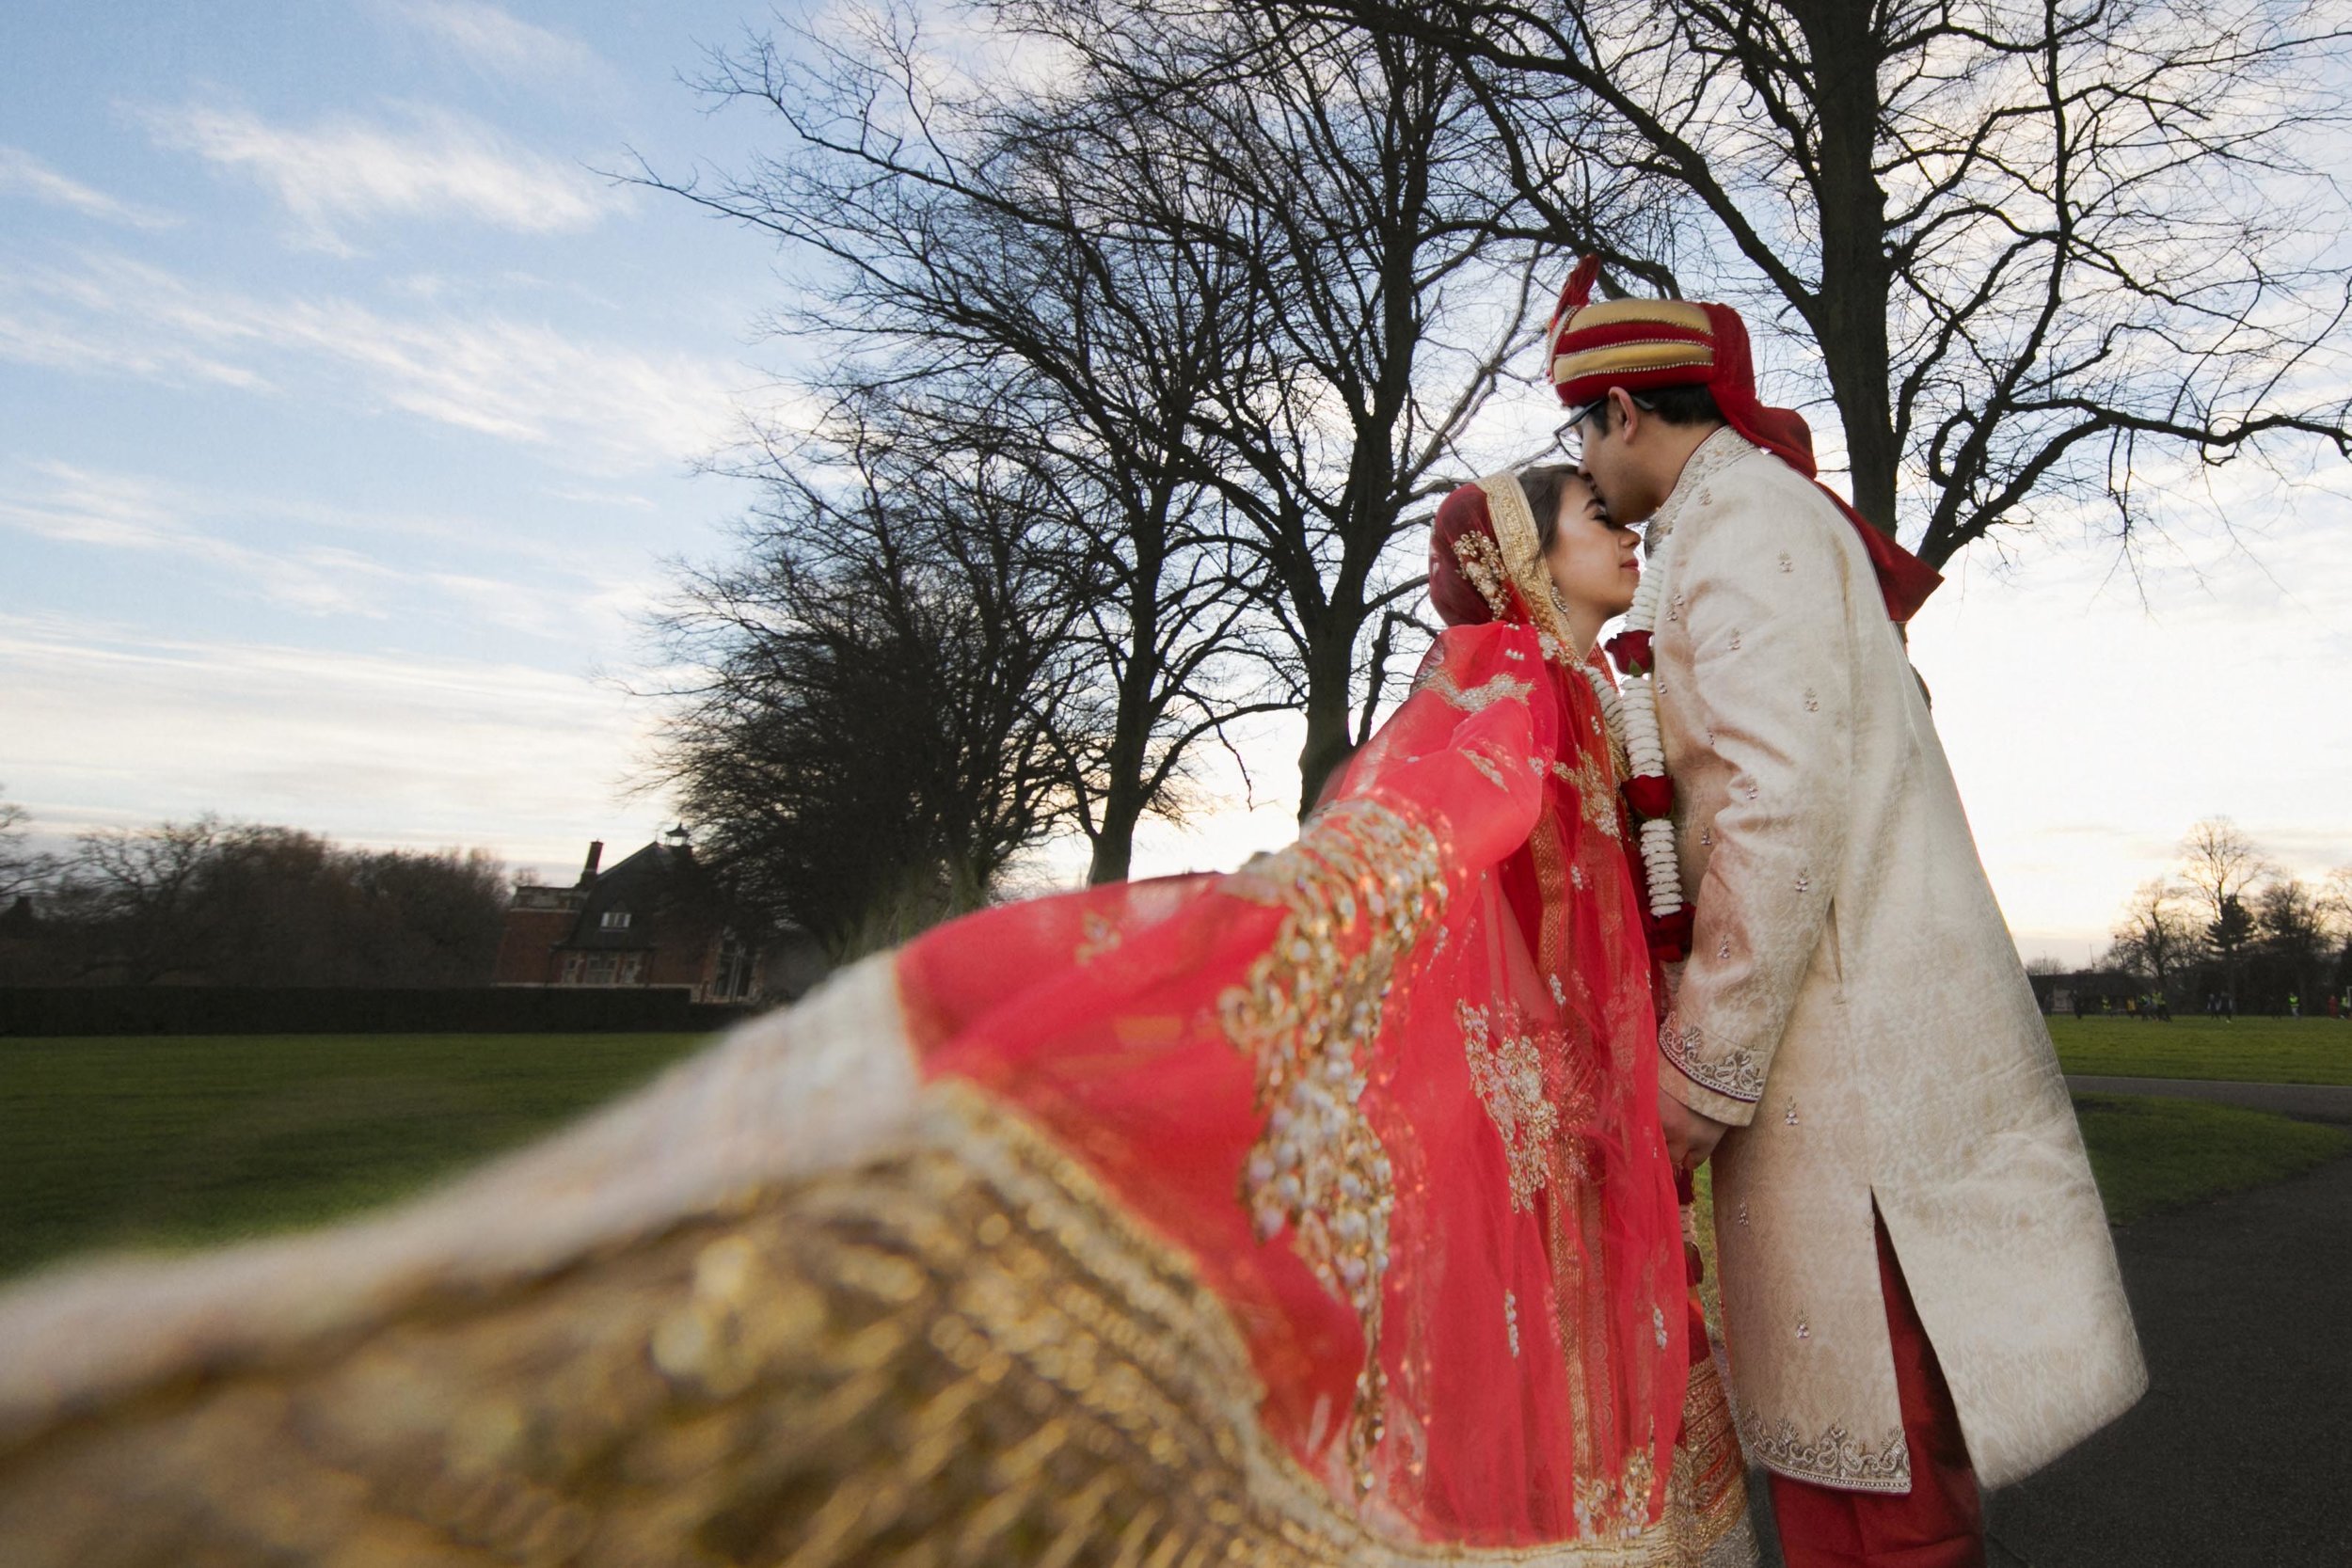 asian-Hindu-wedding-photographer-birmingham-abbey-park-leicester-natalia-smith-photography-5.jpg